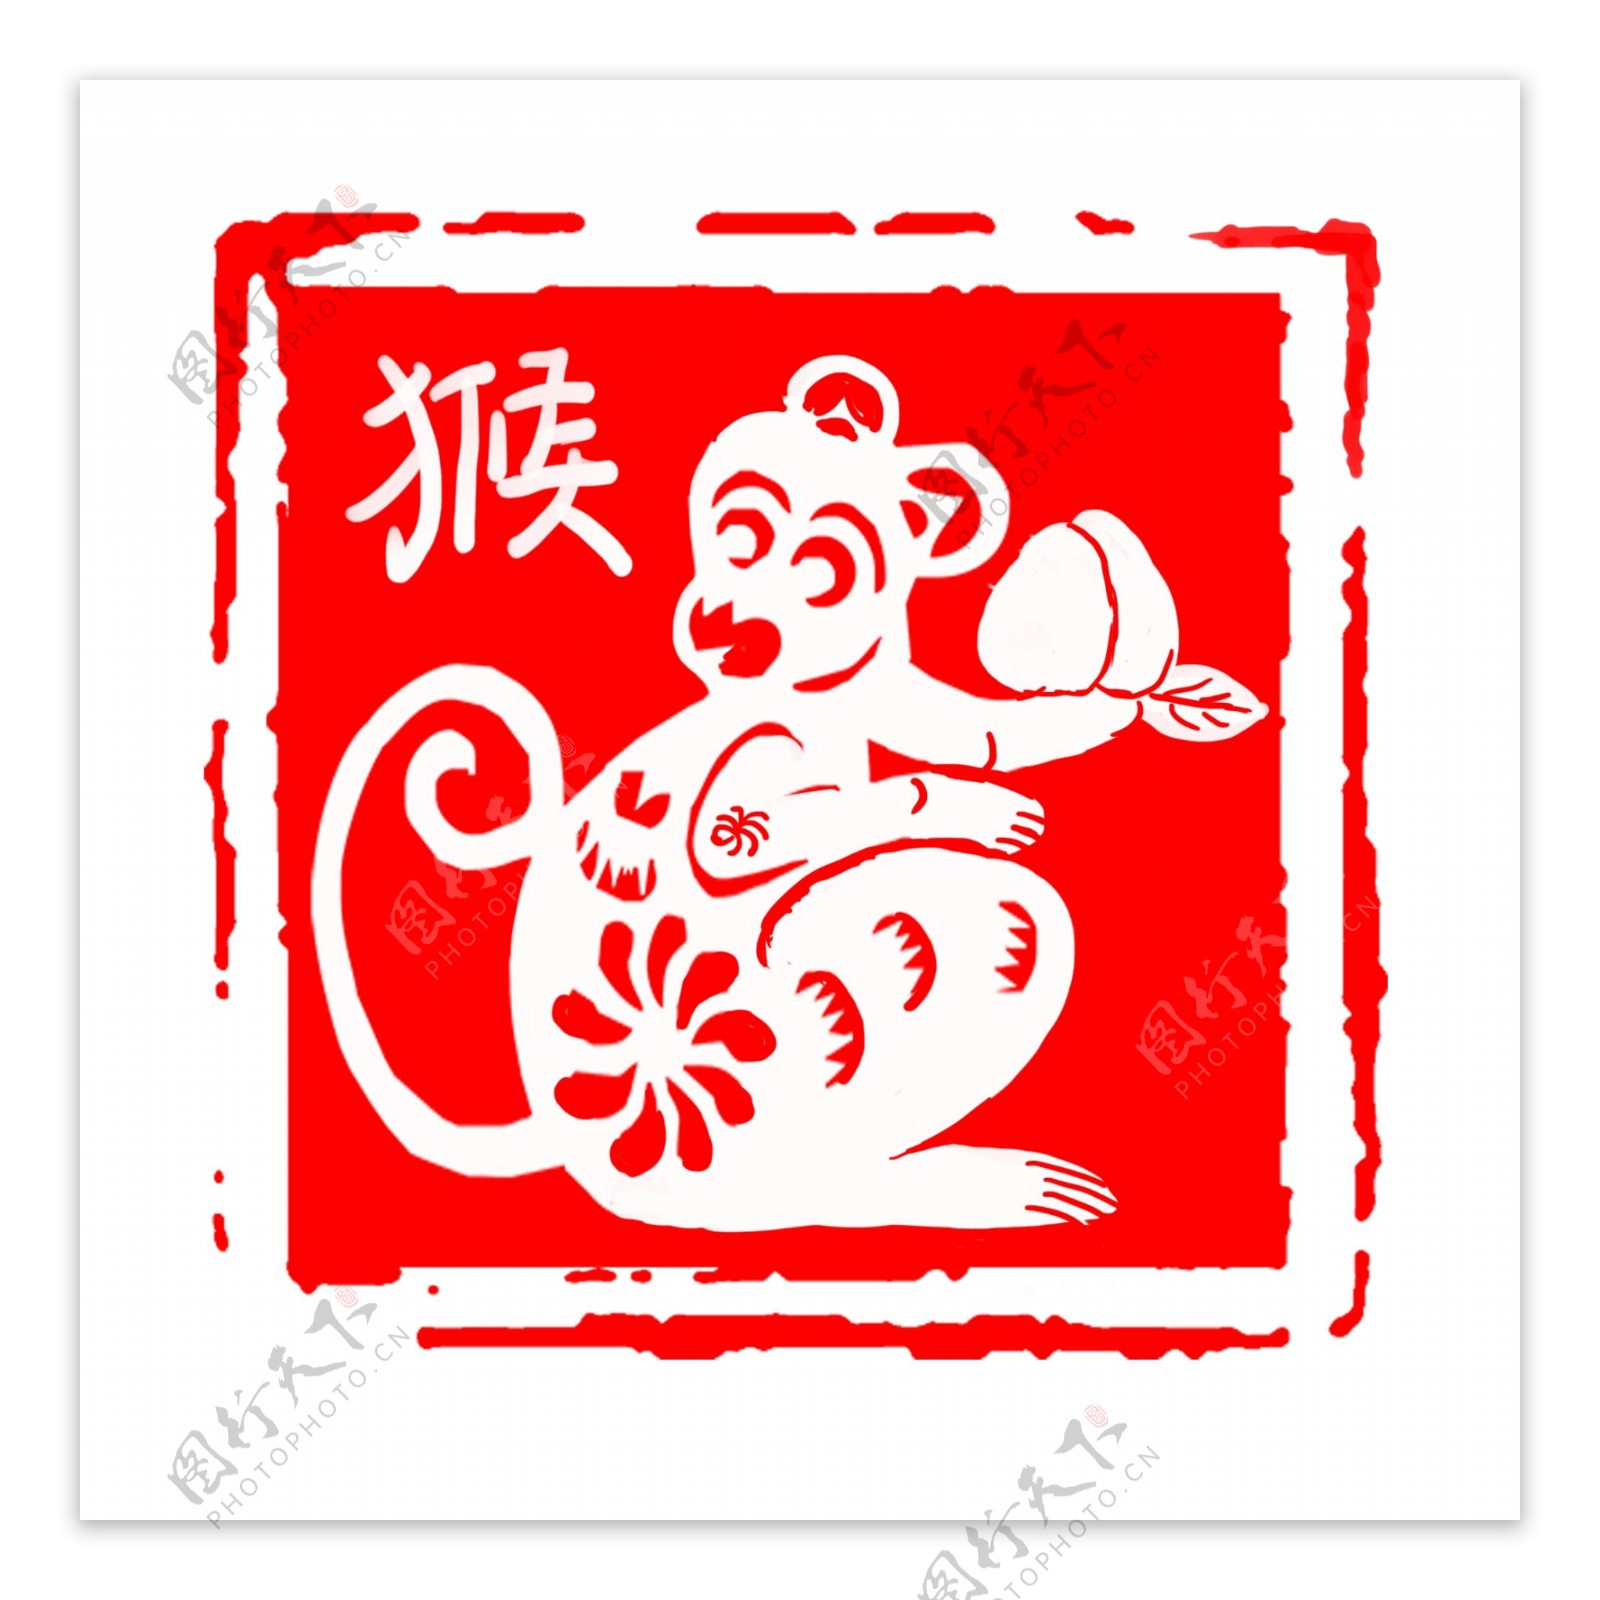 中国风红色古典生肖猴子印章边框元素